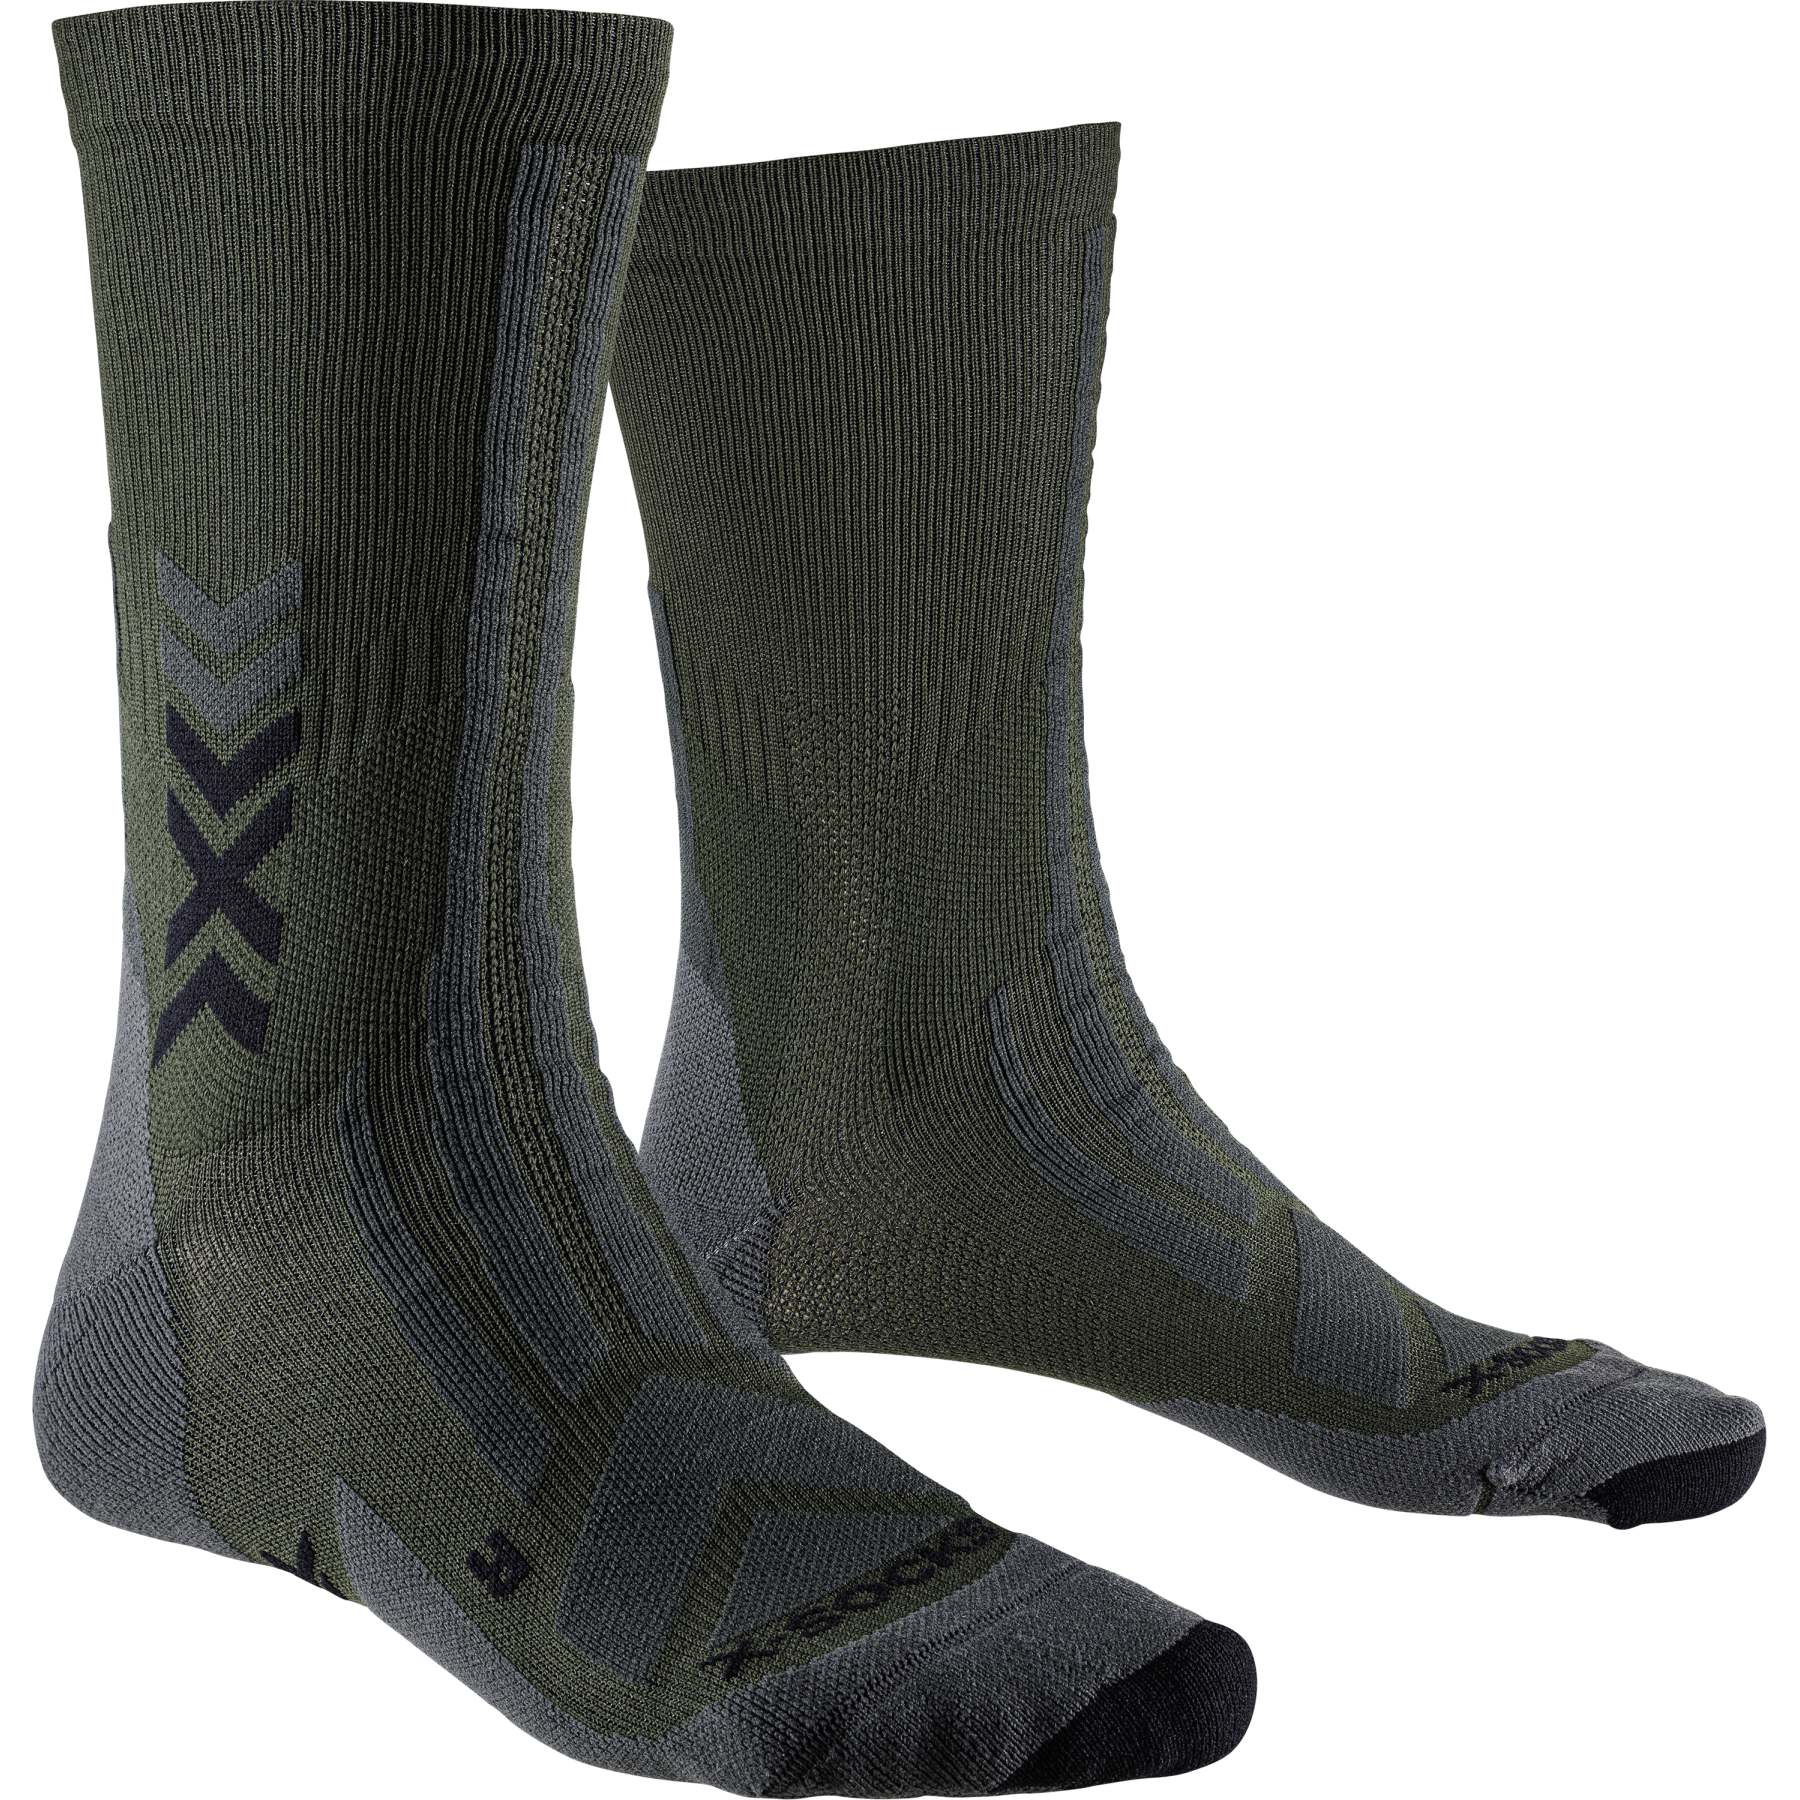 Produktbild von X-Socks Hike Discover Crew Socken - dark sage/black